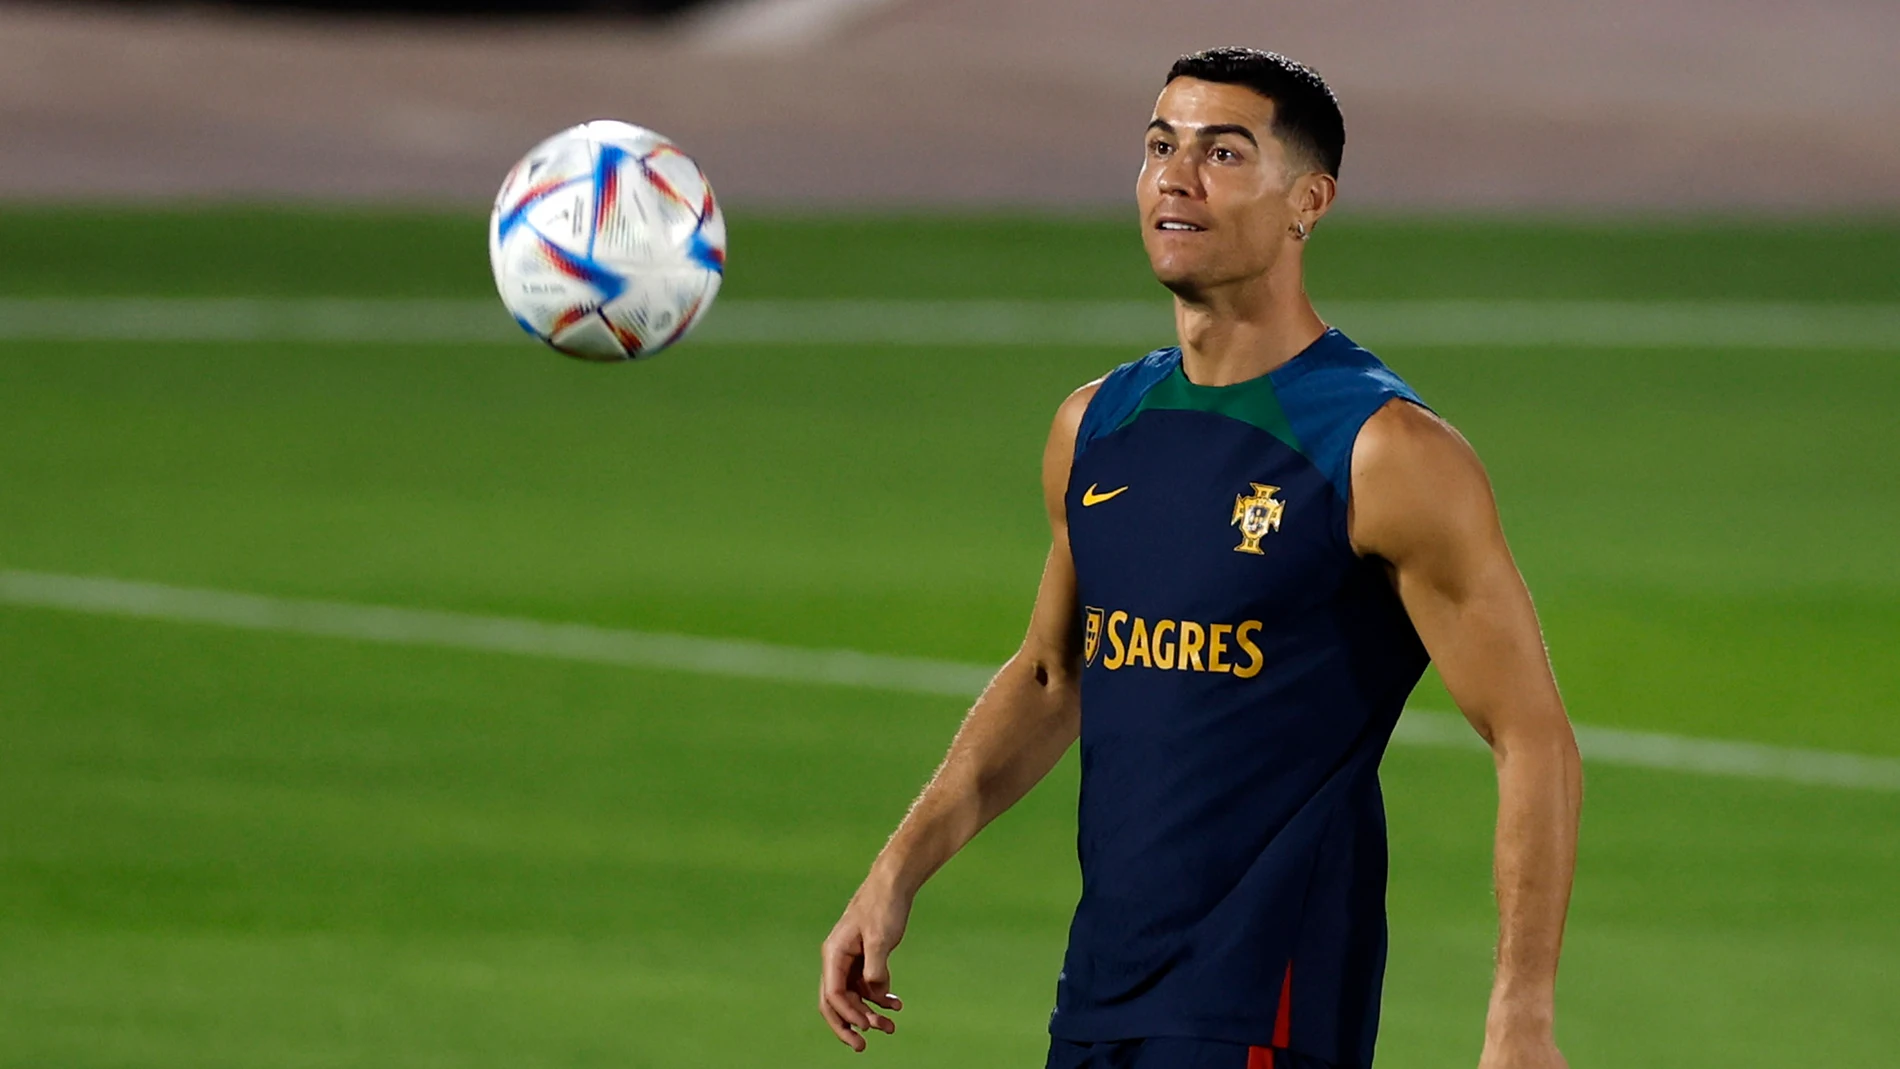 DOHA (QATAR), 08/12/2022.- El delantero Cristiano Ronaldo durante el entrenamiento de Portugal, este jueves en Al Shahaniya, para preparar el partido de cuartos de final del Mundial Qatar 2022 que les enfrenta a Marruecos. EFE/ Alberto Estévez